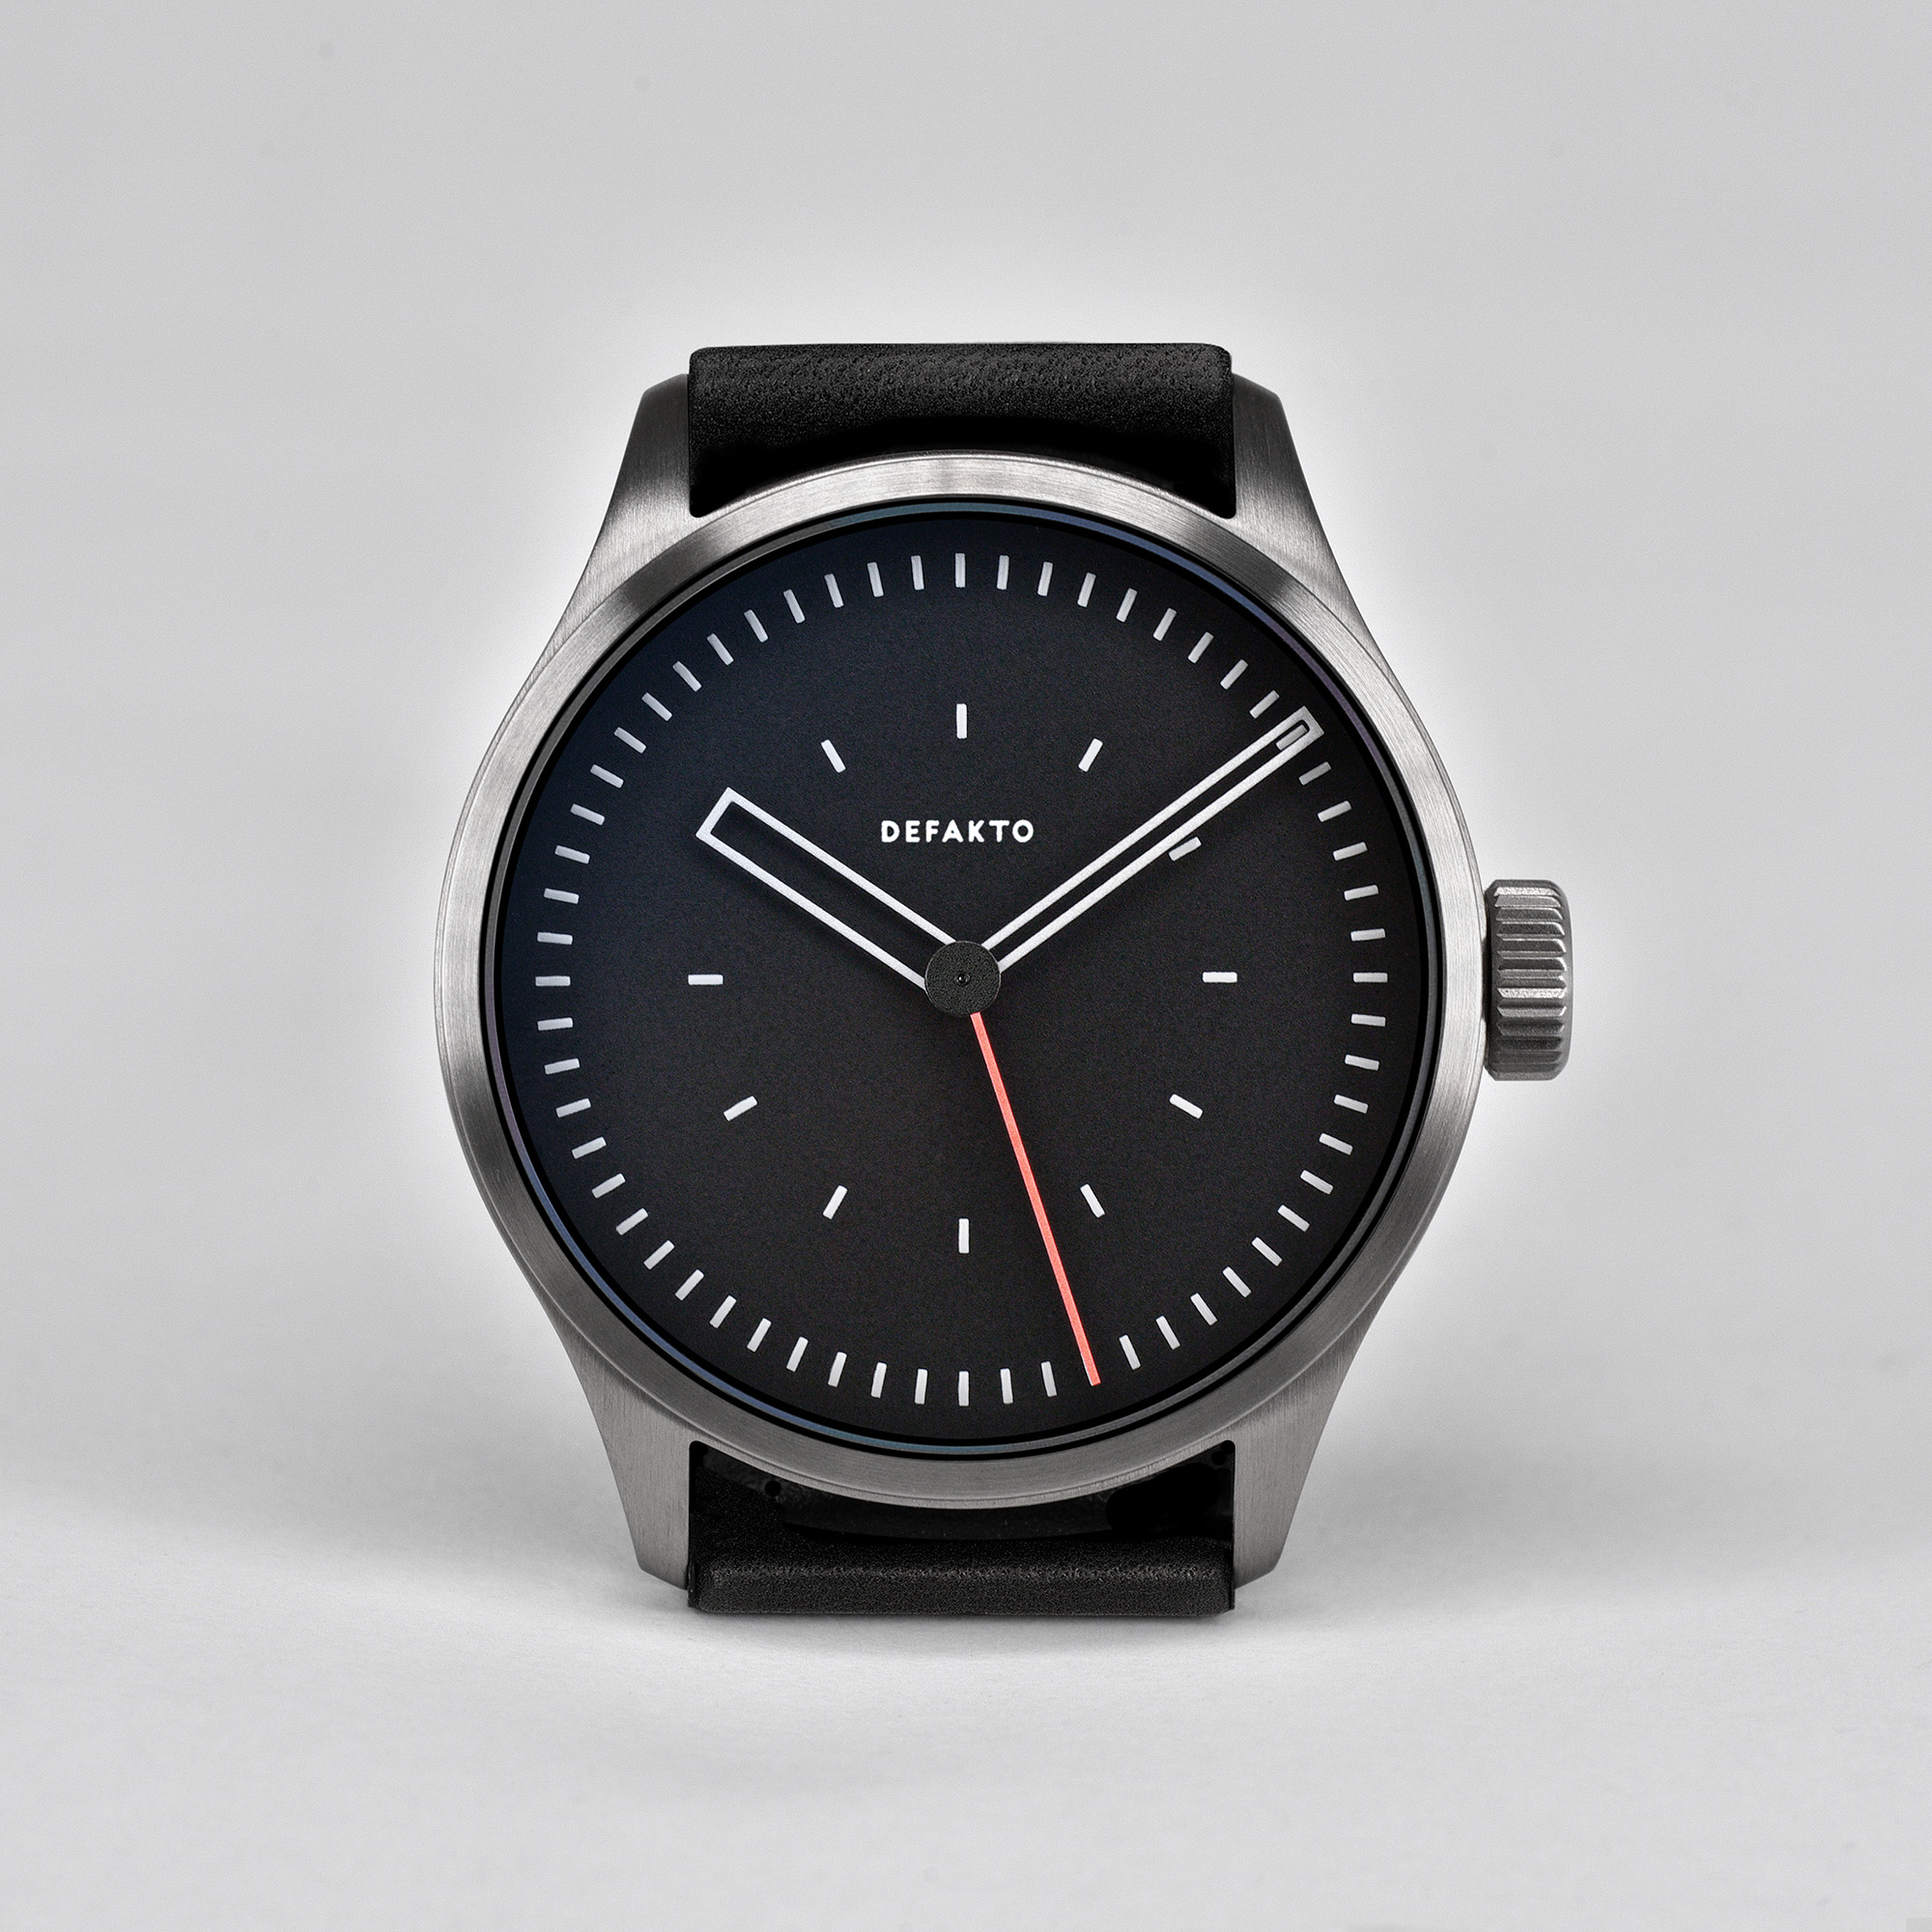 Defakto Kinetik Bauhaus Watch Design Architect Architekten Uhr